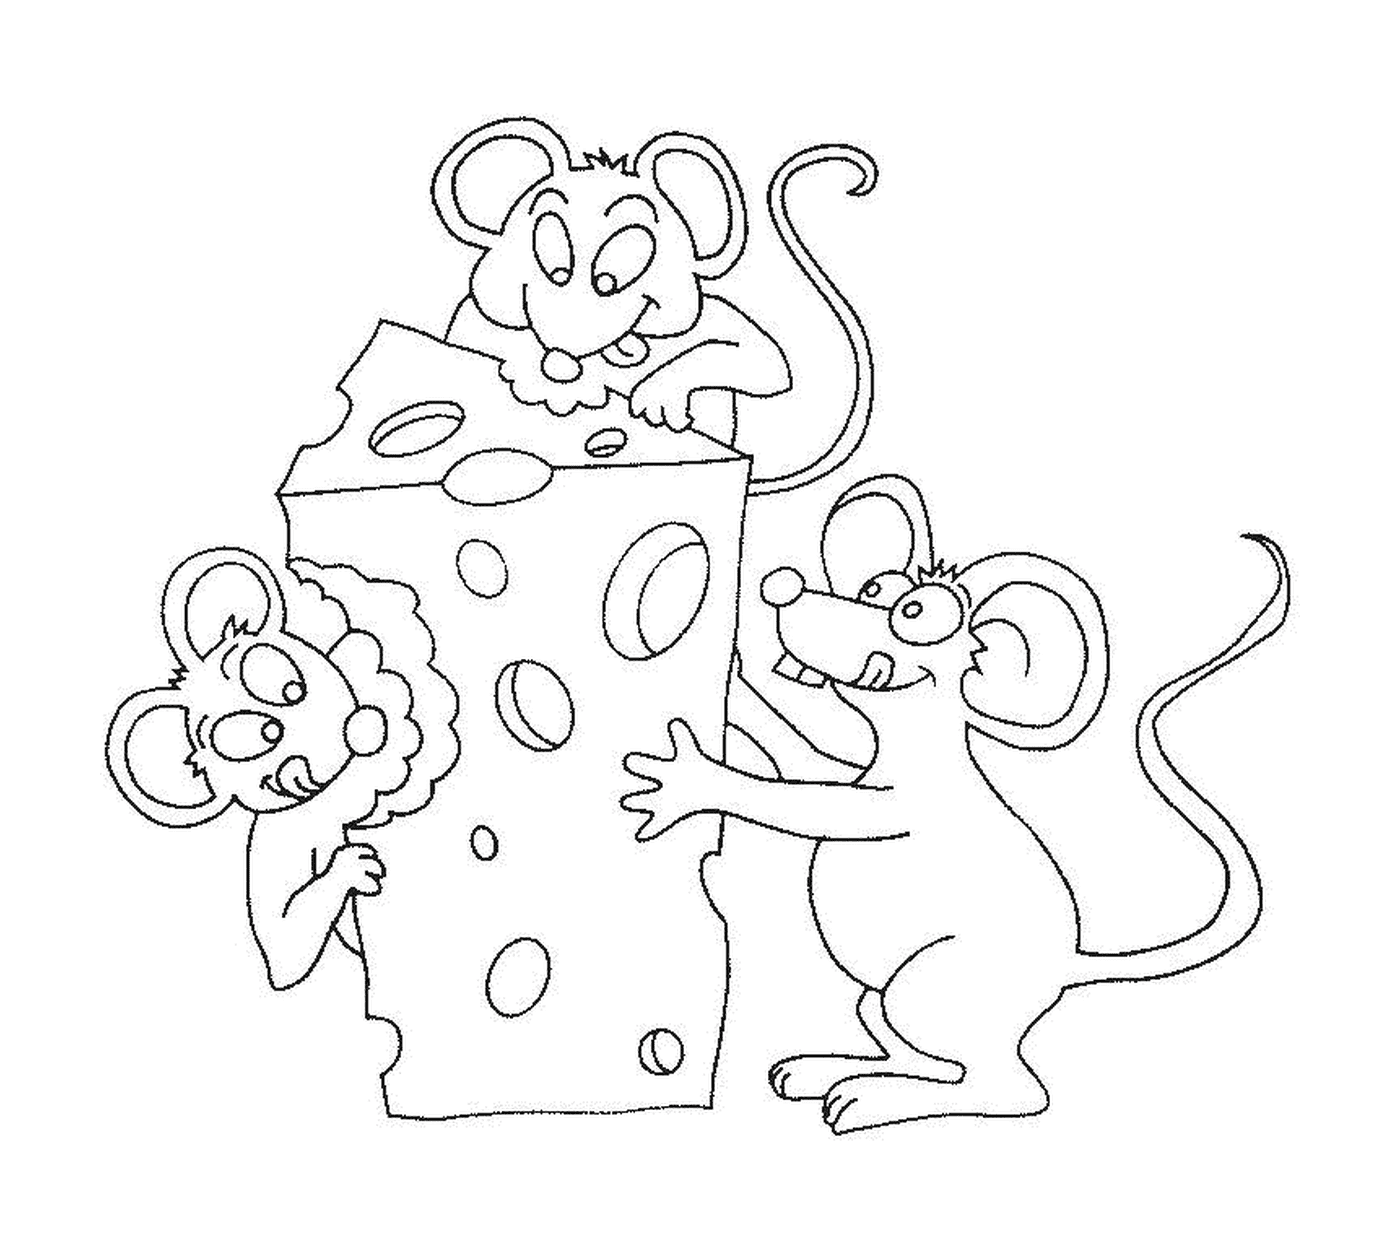  Три мыши за кусок сыра 